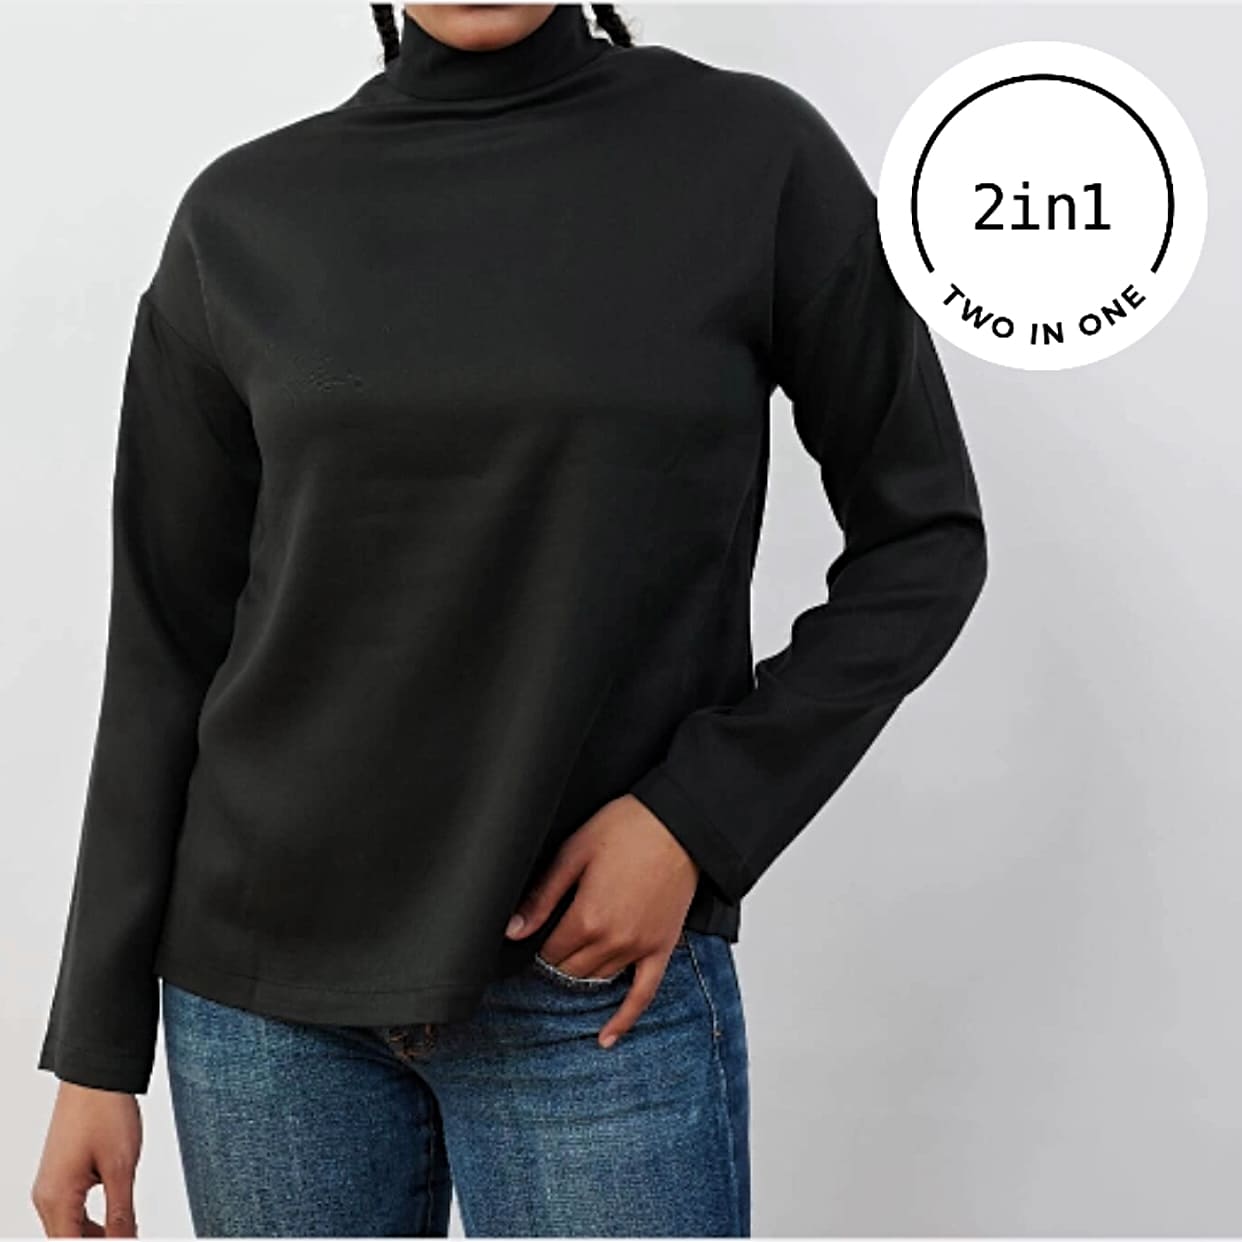 Schwarze Stehkragen 2IN1-Bluse an Frauenkörper mit weißem rundem 2IN1-Icon